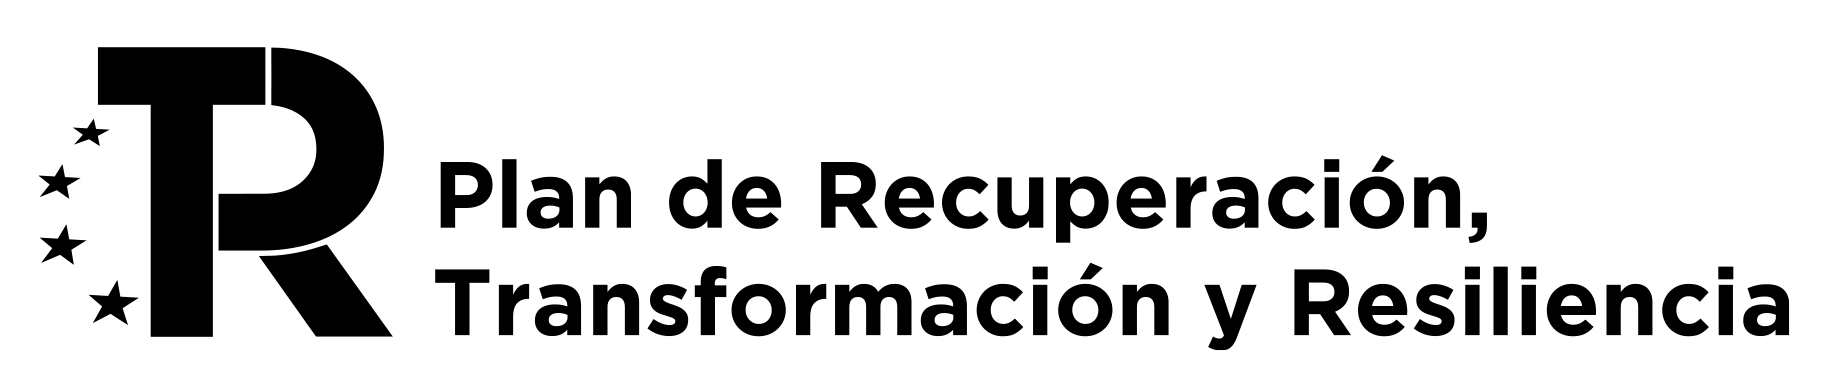 Logo-PRTR-dos-lineas